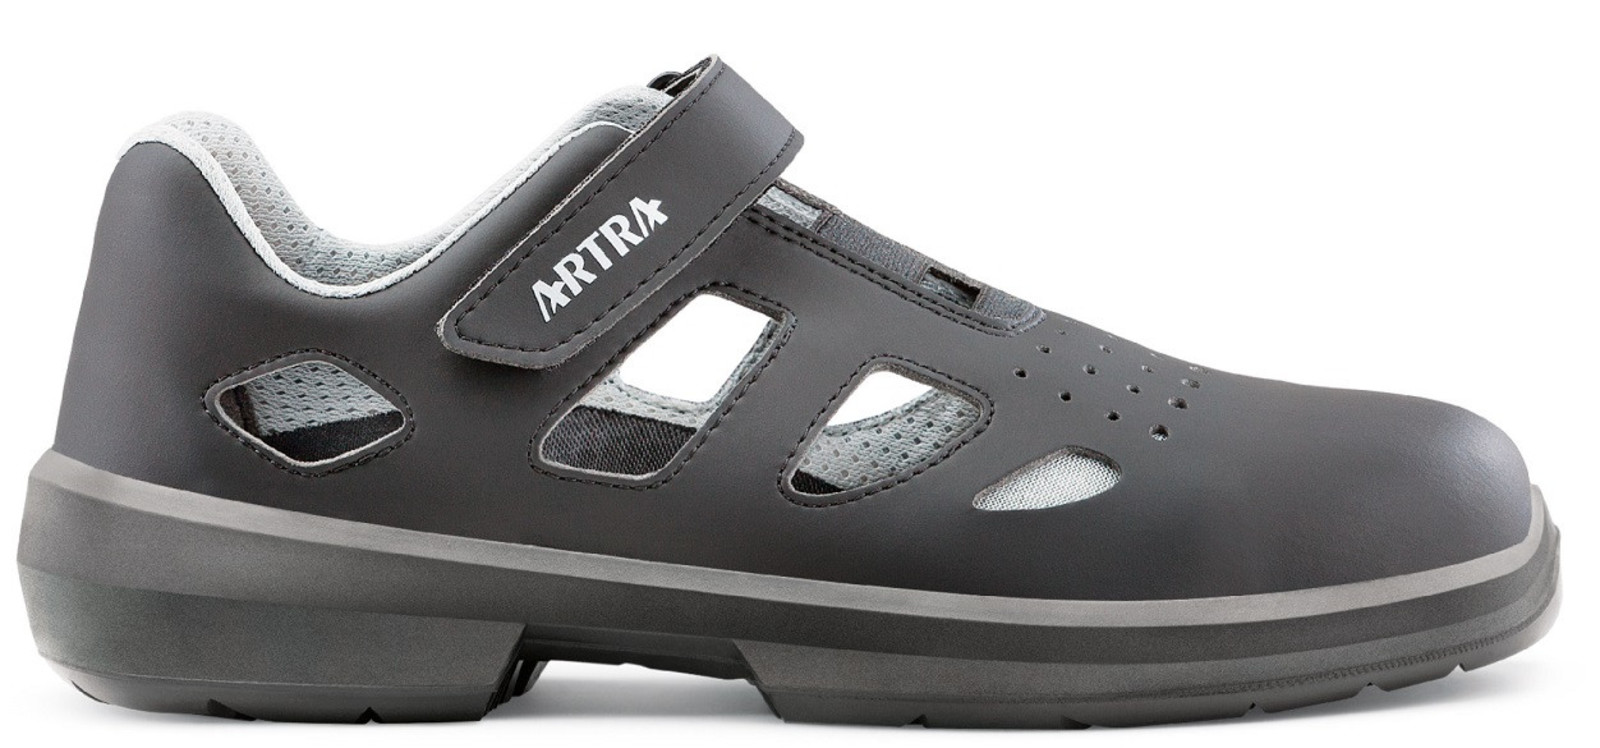 Bezpečnostné sandále Artra Ario 801 661460 S1P - veľkosť: 44, farba: čierna